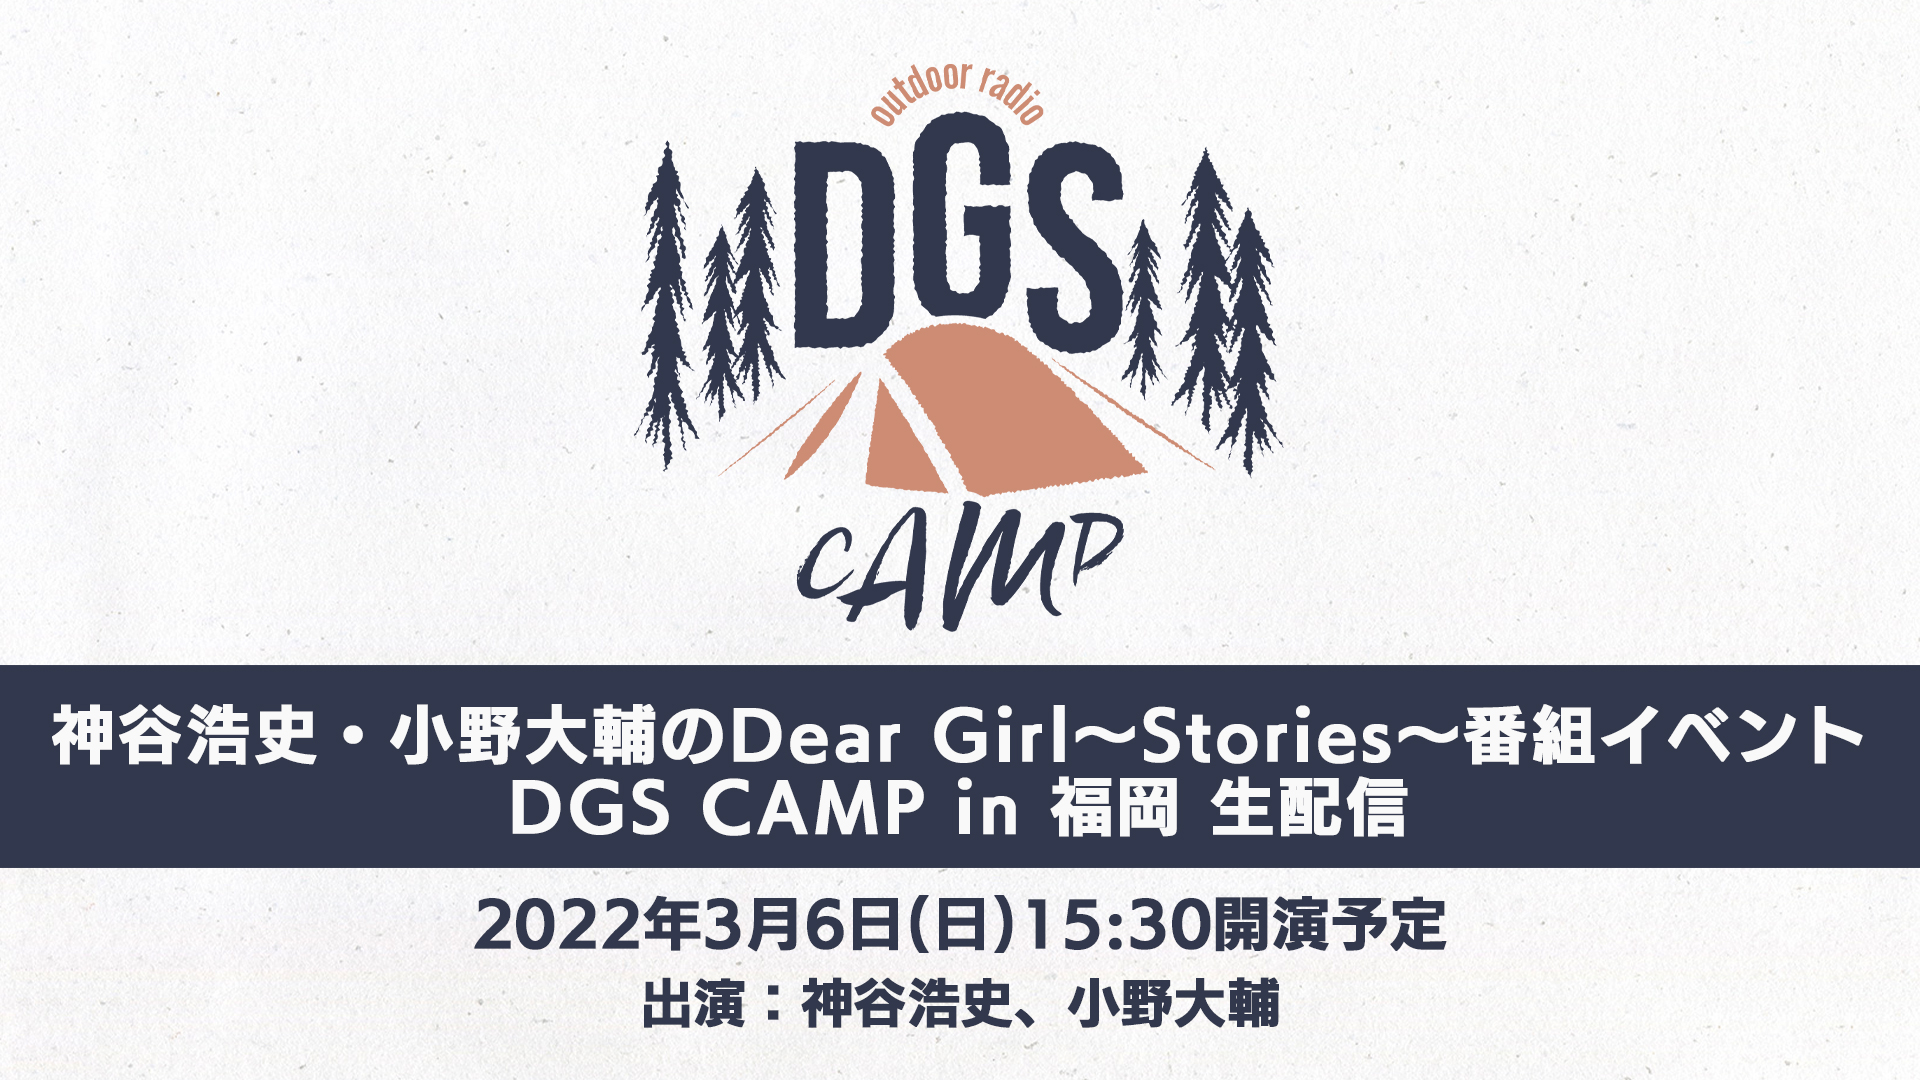 ニコニコ生放送にてオリジナルギフトの販売が決定！DGS CAMP in 福岡 3/6(日)公演